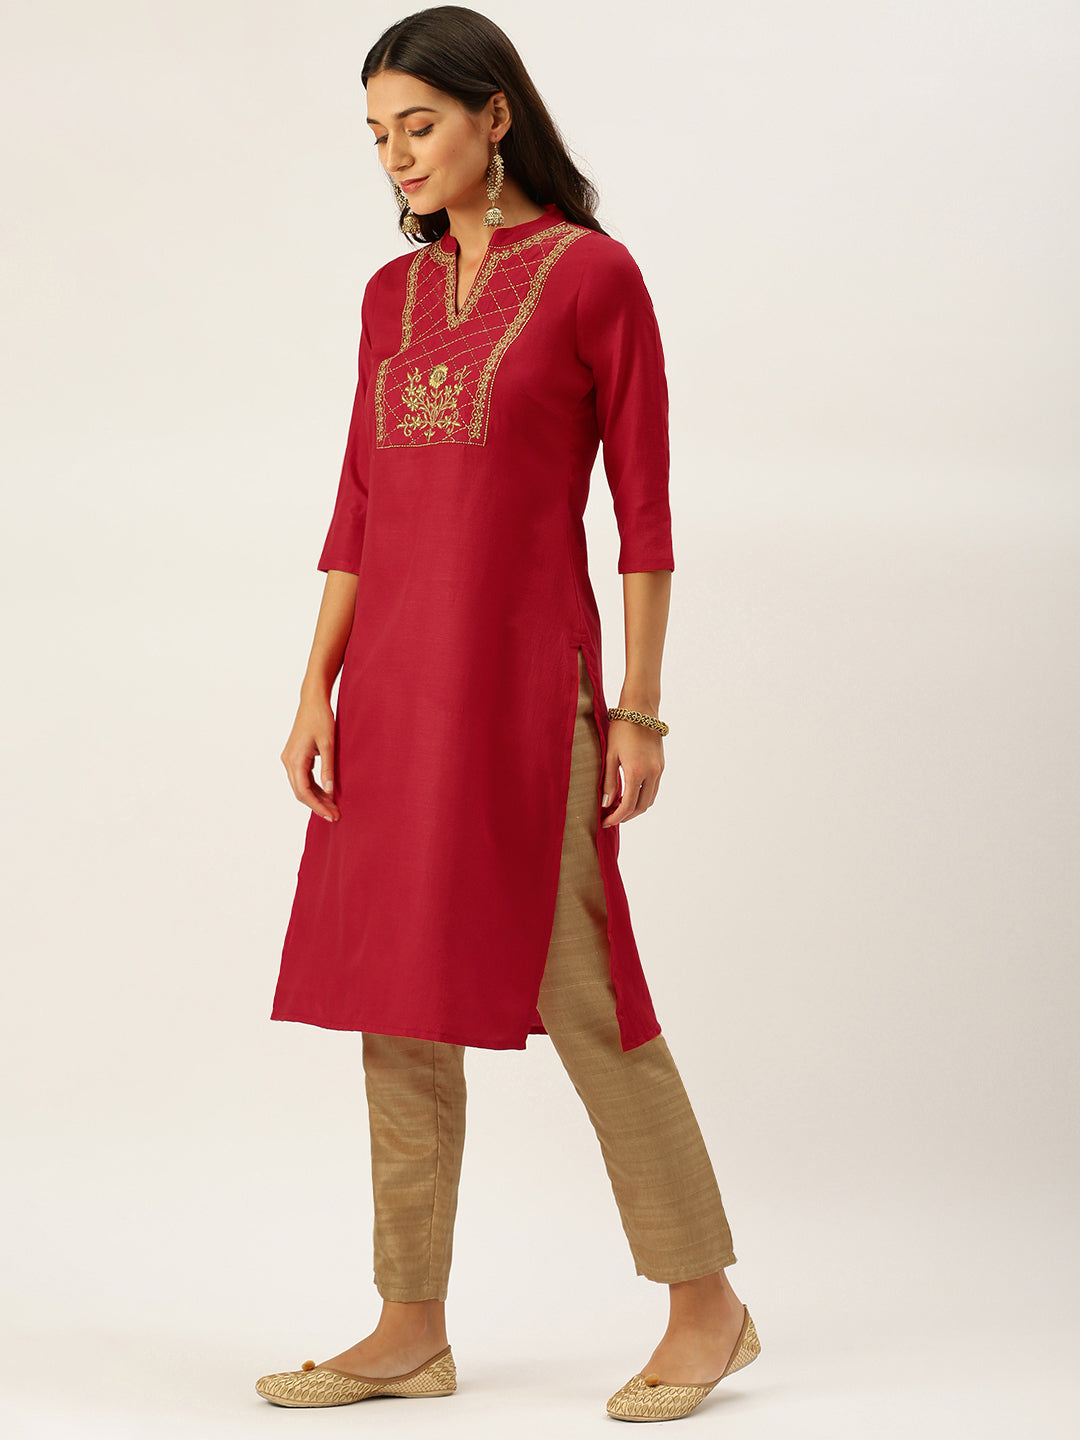 Vedic Women Red Ethnic Motifs Yoke Design Kantha Work Kurta with Trousers